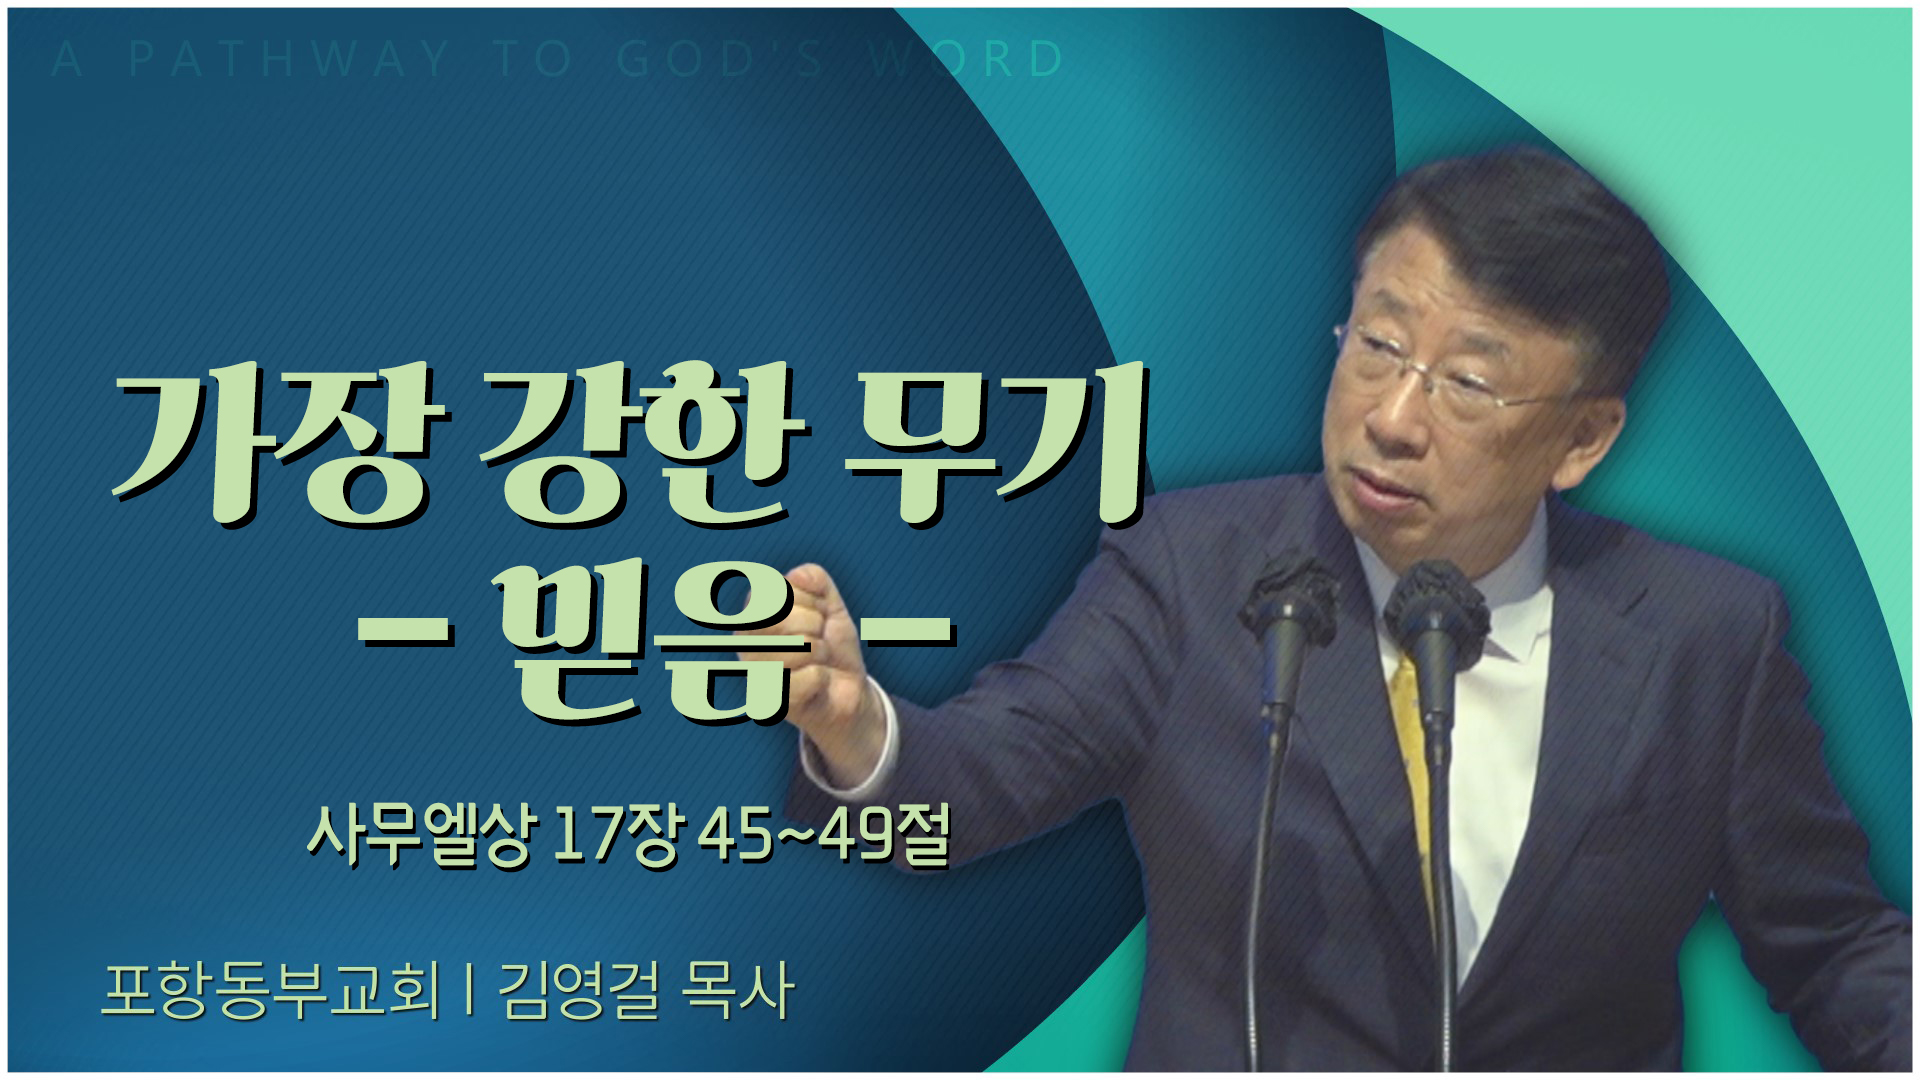 가장 강한 무기 - 믿음┃포항동부교회 김영걸 목사	